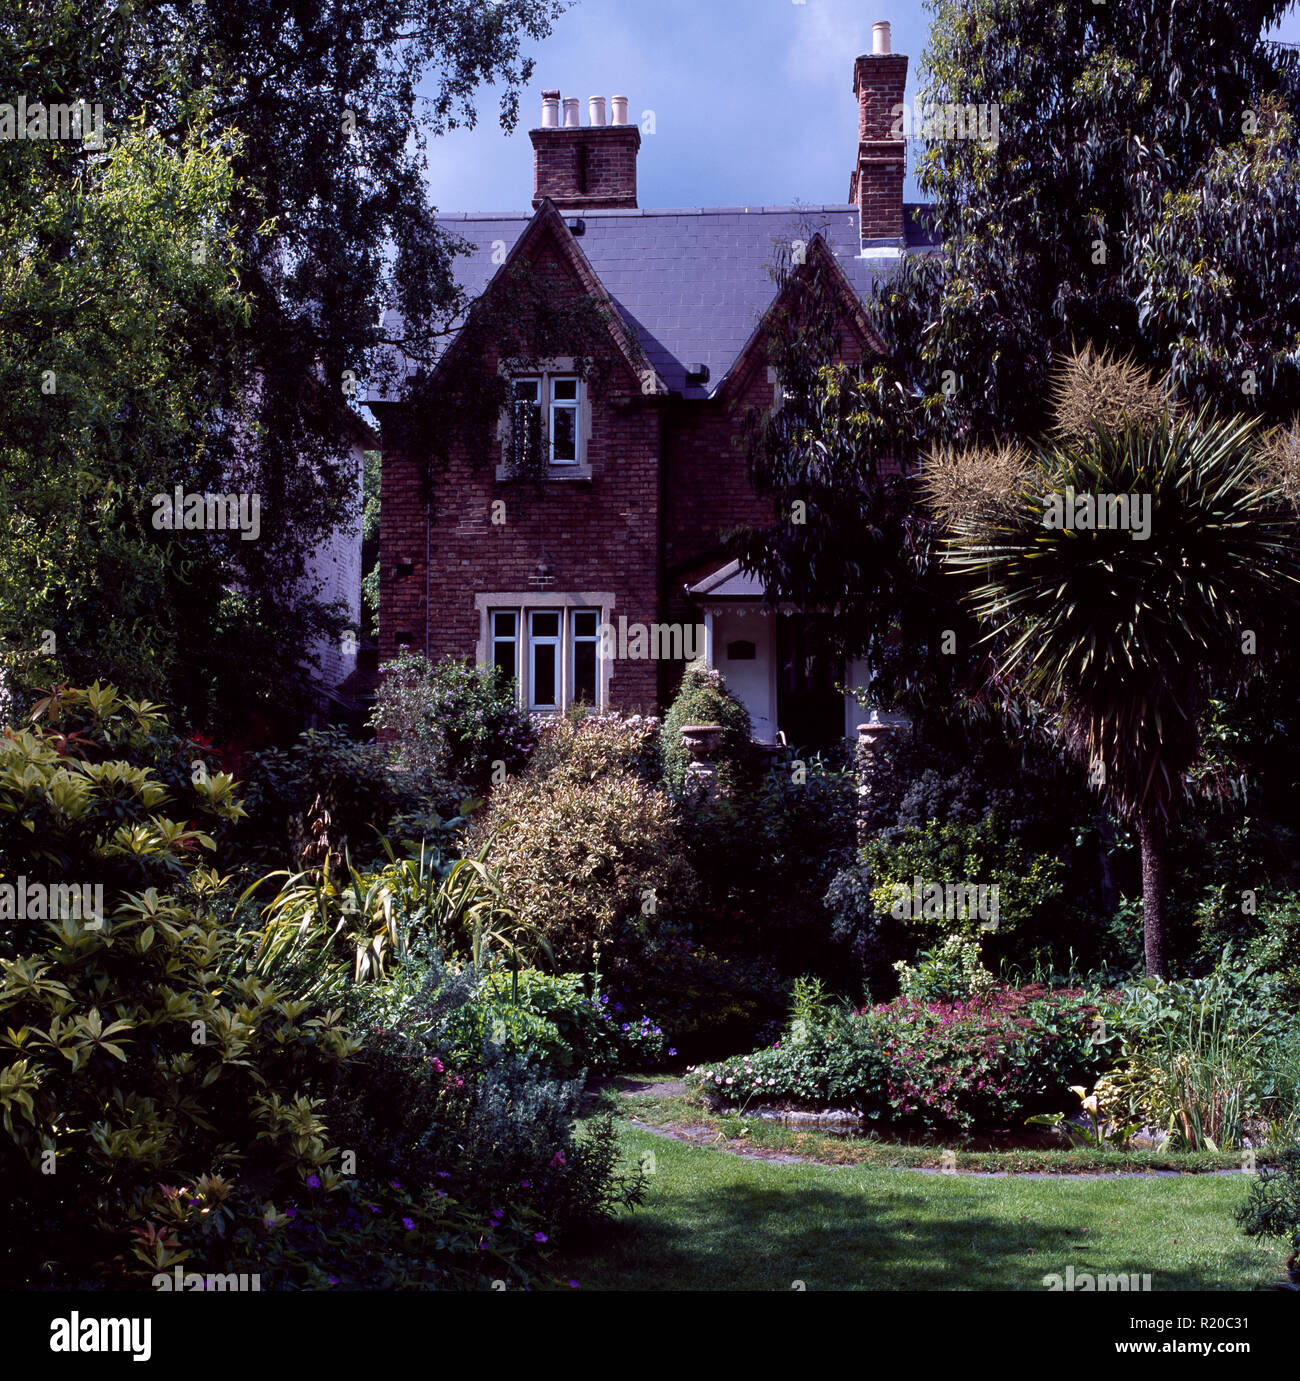 Palmeras y arbustos verdes en el jardín de la gran casa victoriana Foto de stock